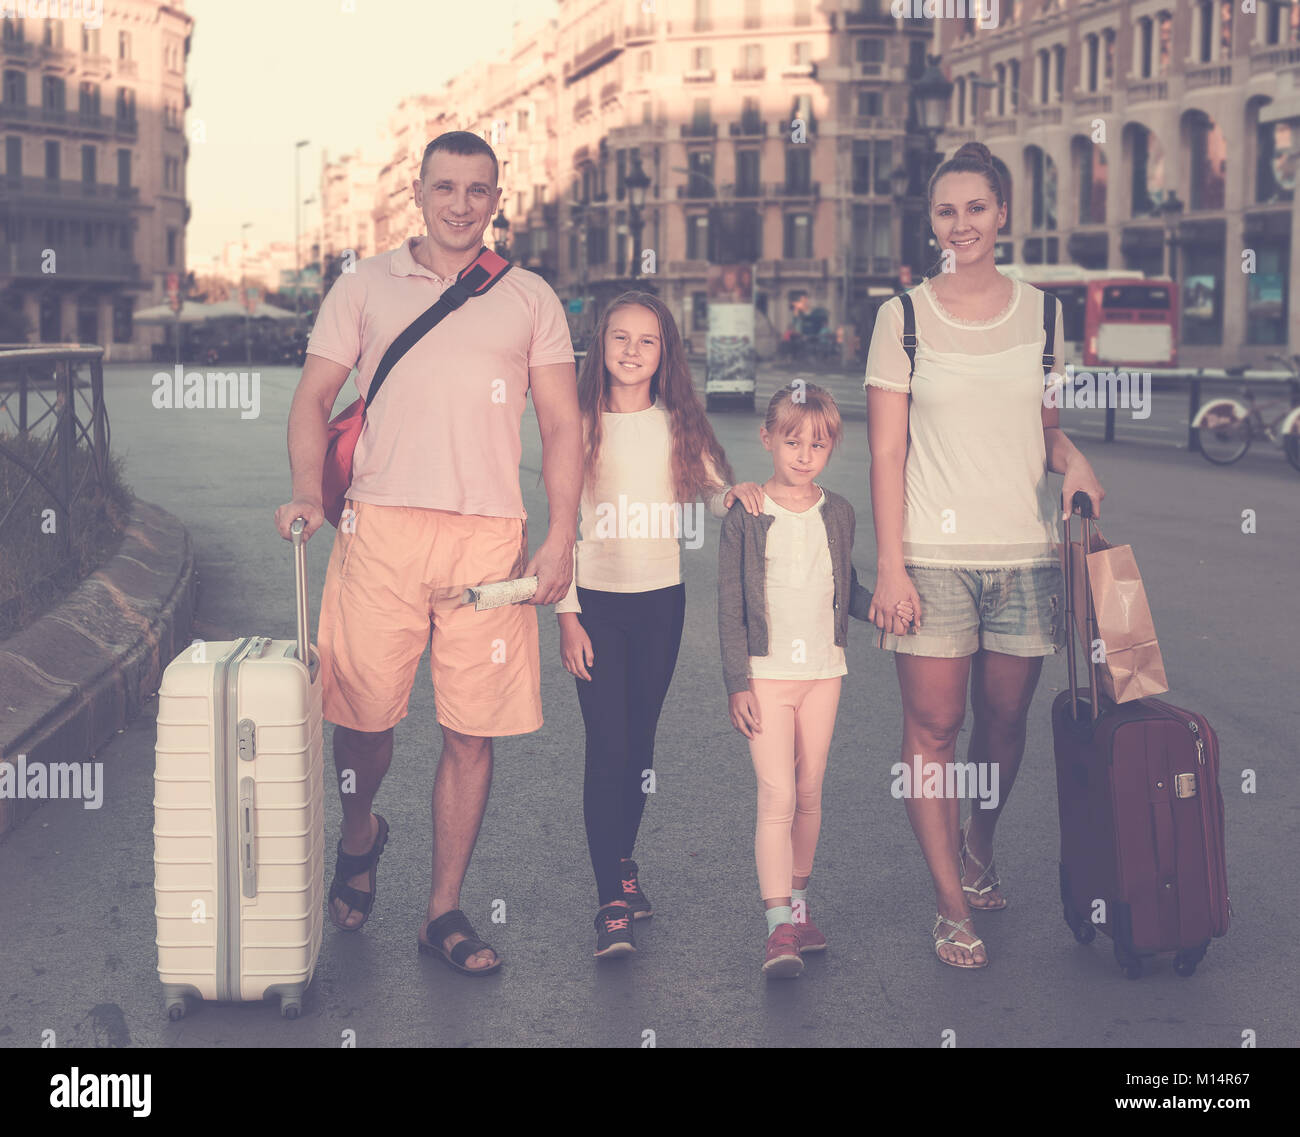 Heureux famille de quatre personnes voyageant ensemble sur ville, marcher avec des bagages Banque D'Images